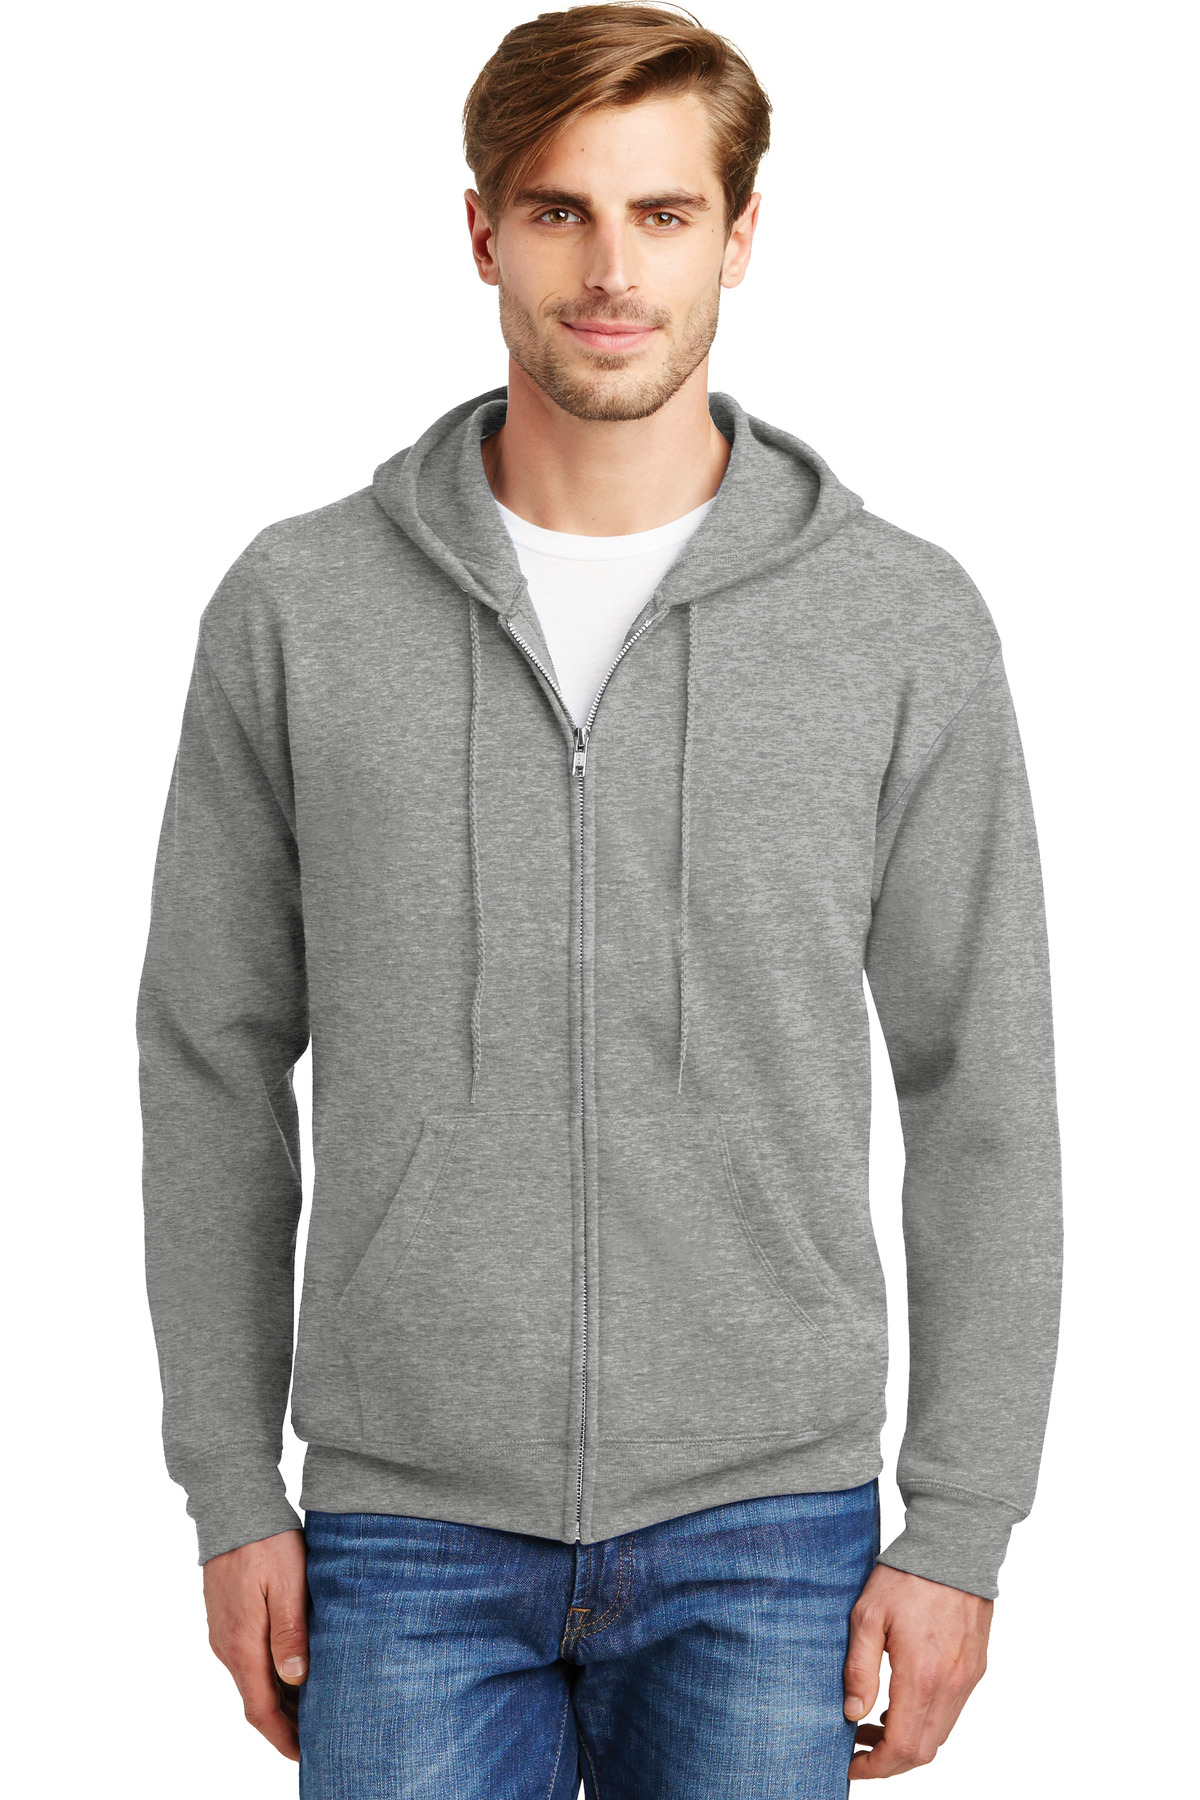 Hanes - EcoSmart Full-Zip Hooded Sweatshirt-Hanes